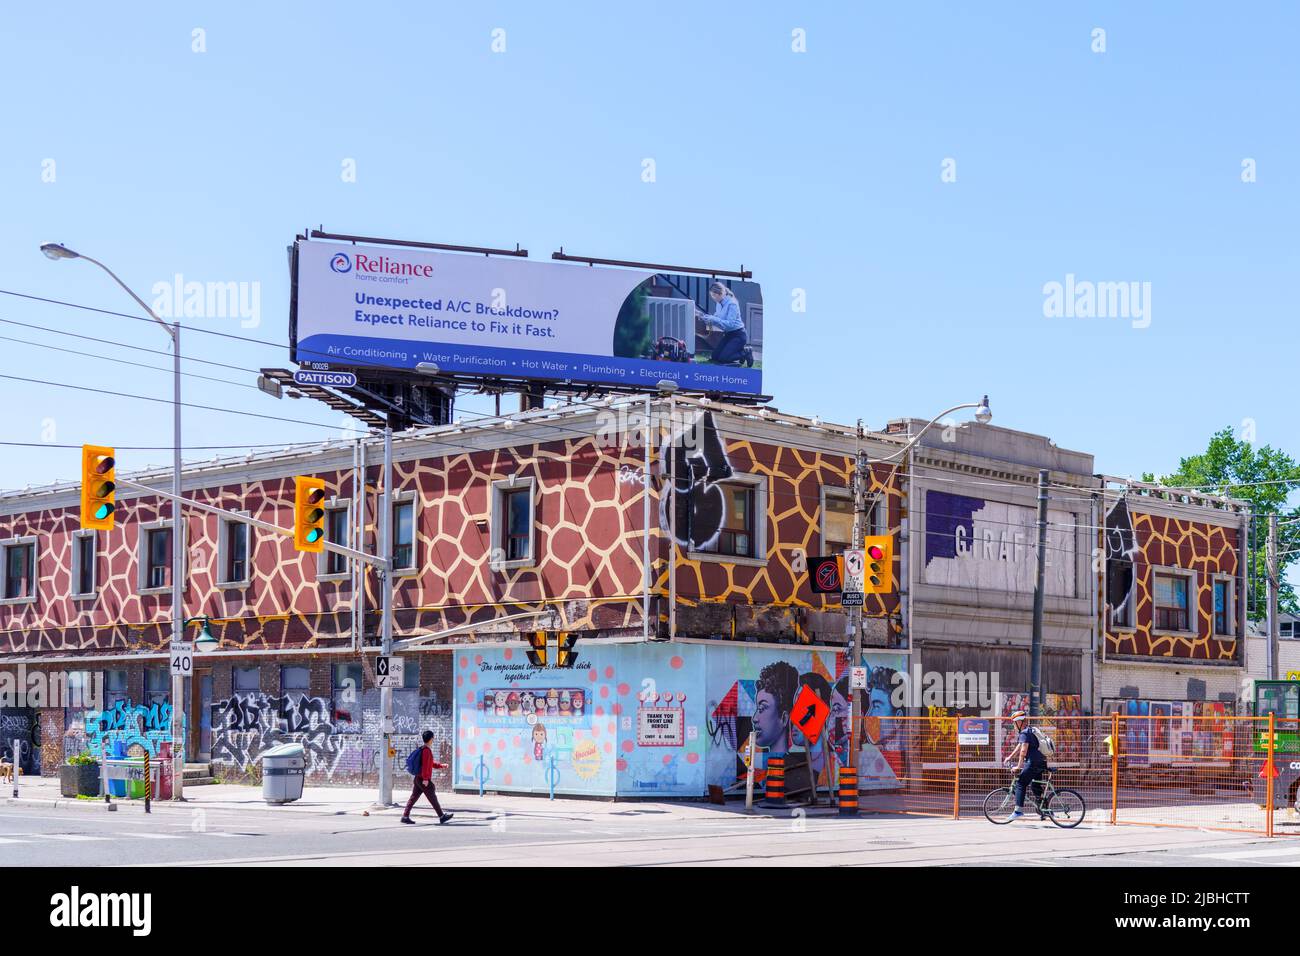 Un cartello Reliance sulla sommità di un edificio con diverse opere d'arte nella facciata. Foto Stock